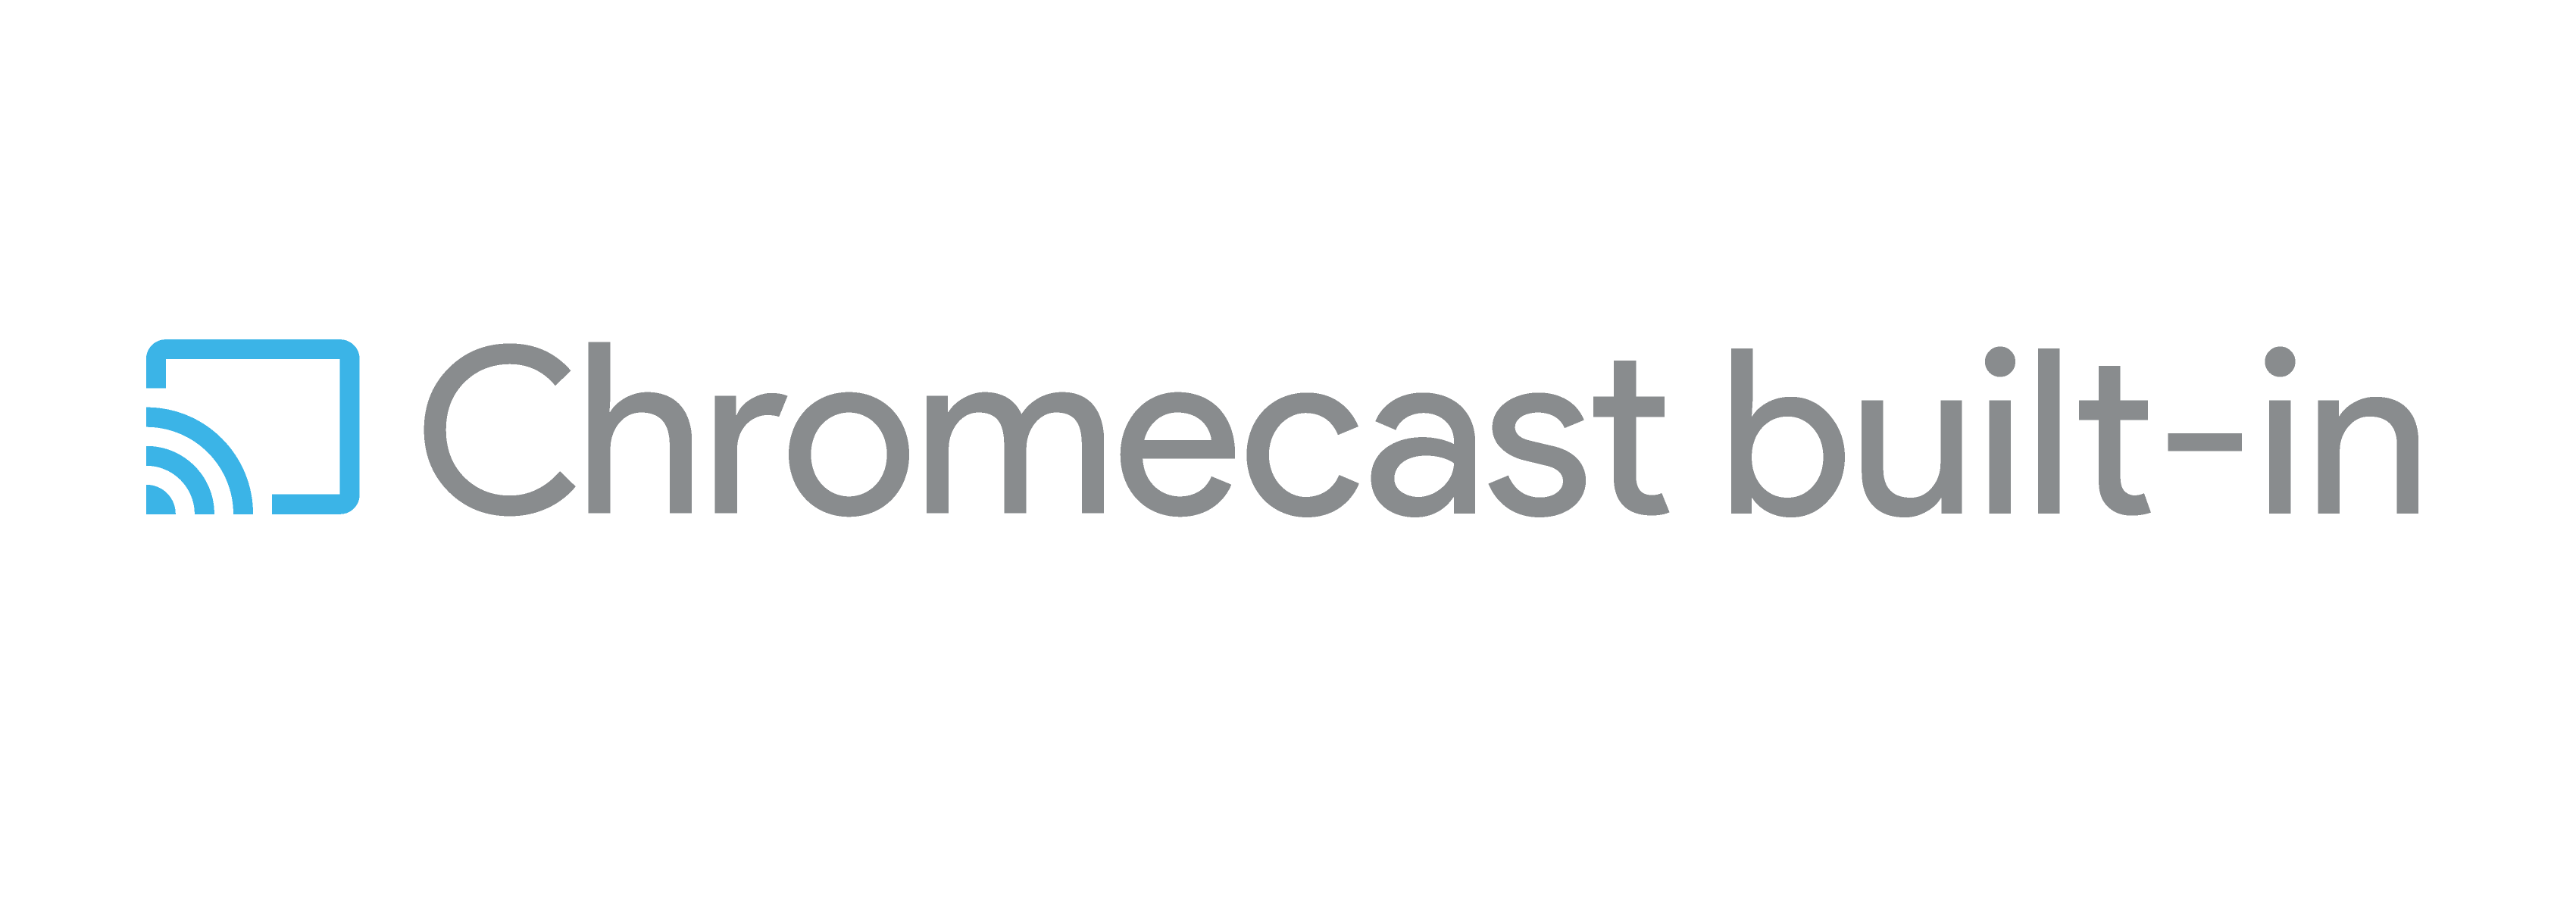 Google Cast Logo - User Experience with the Chromecast Platform | Cast | Google Developers